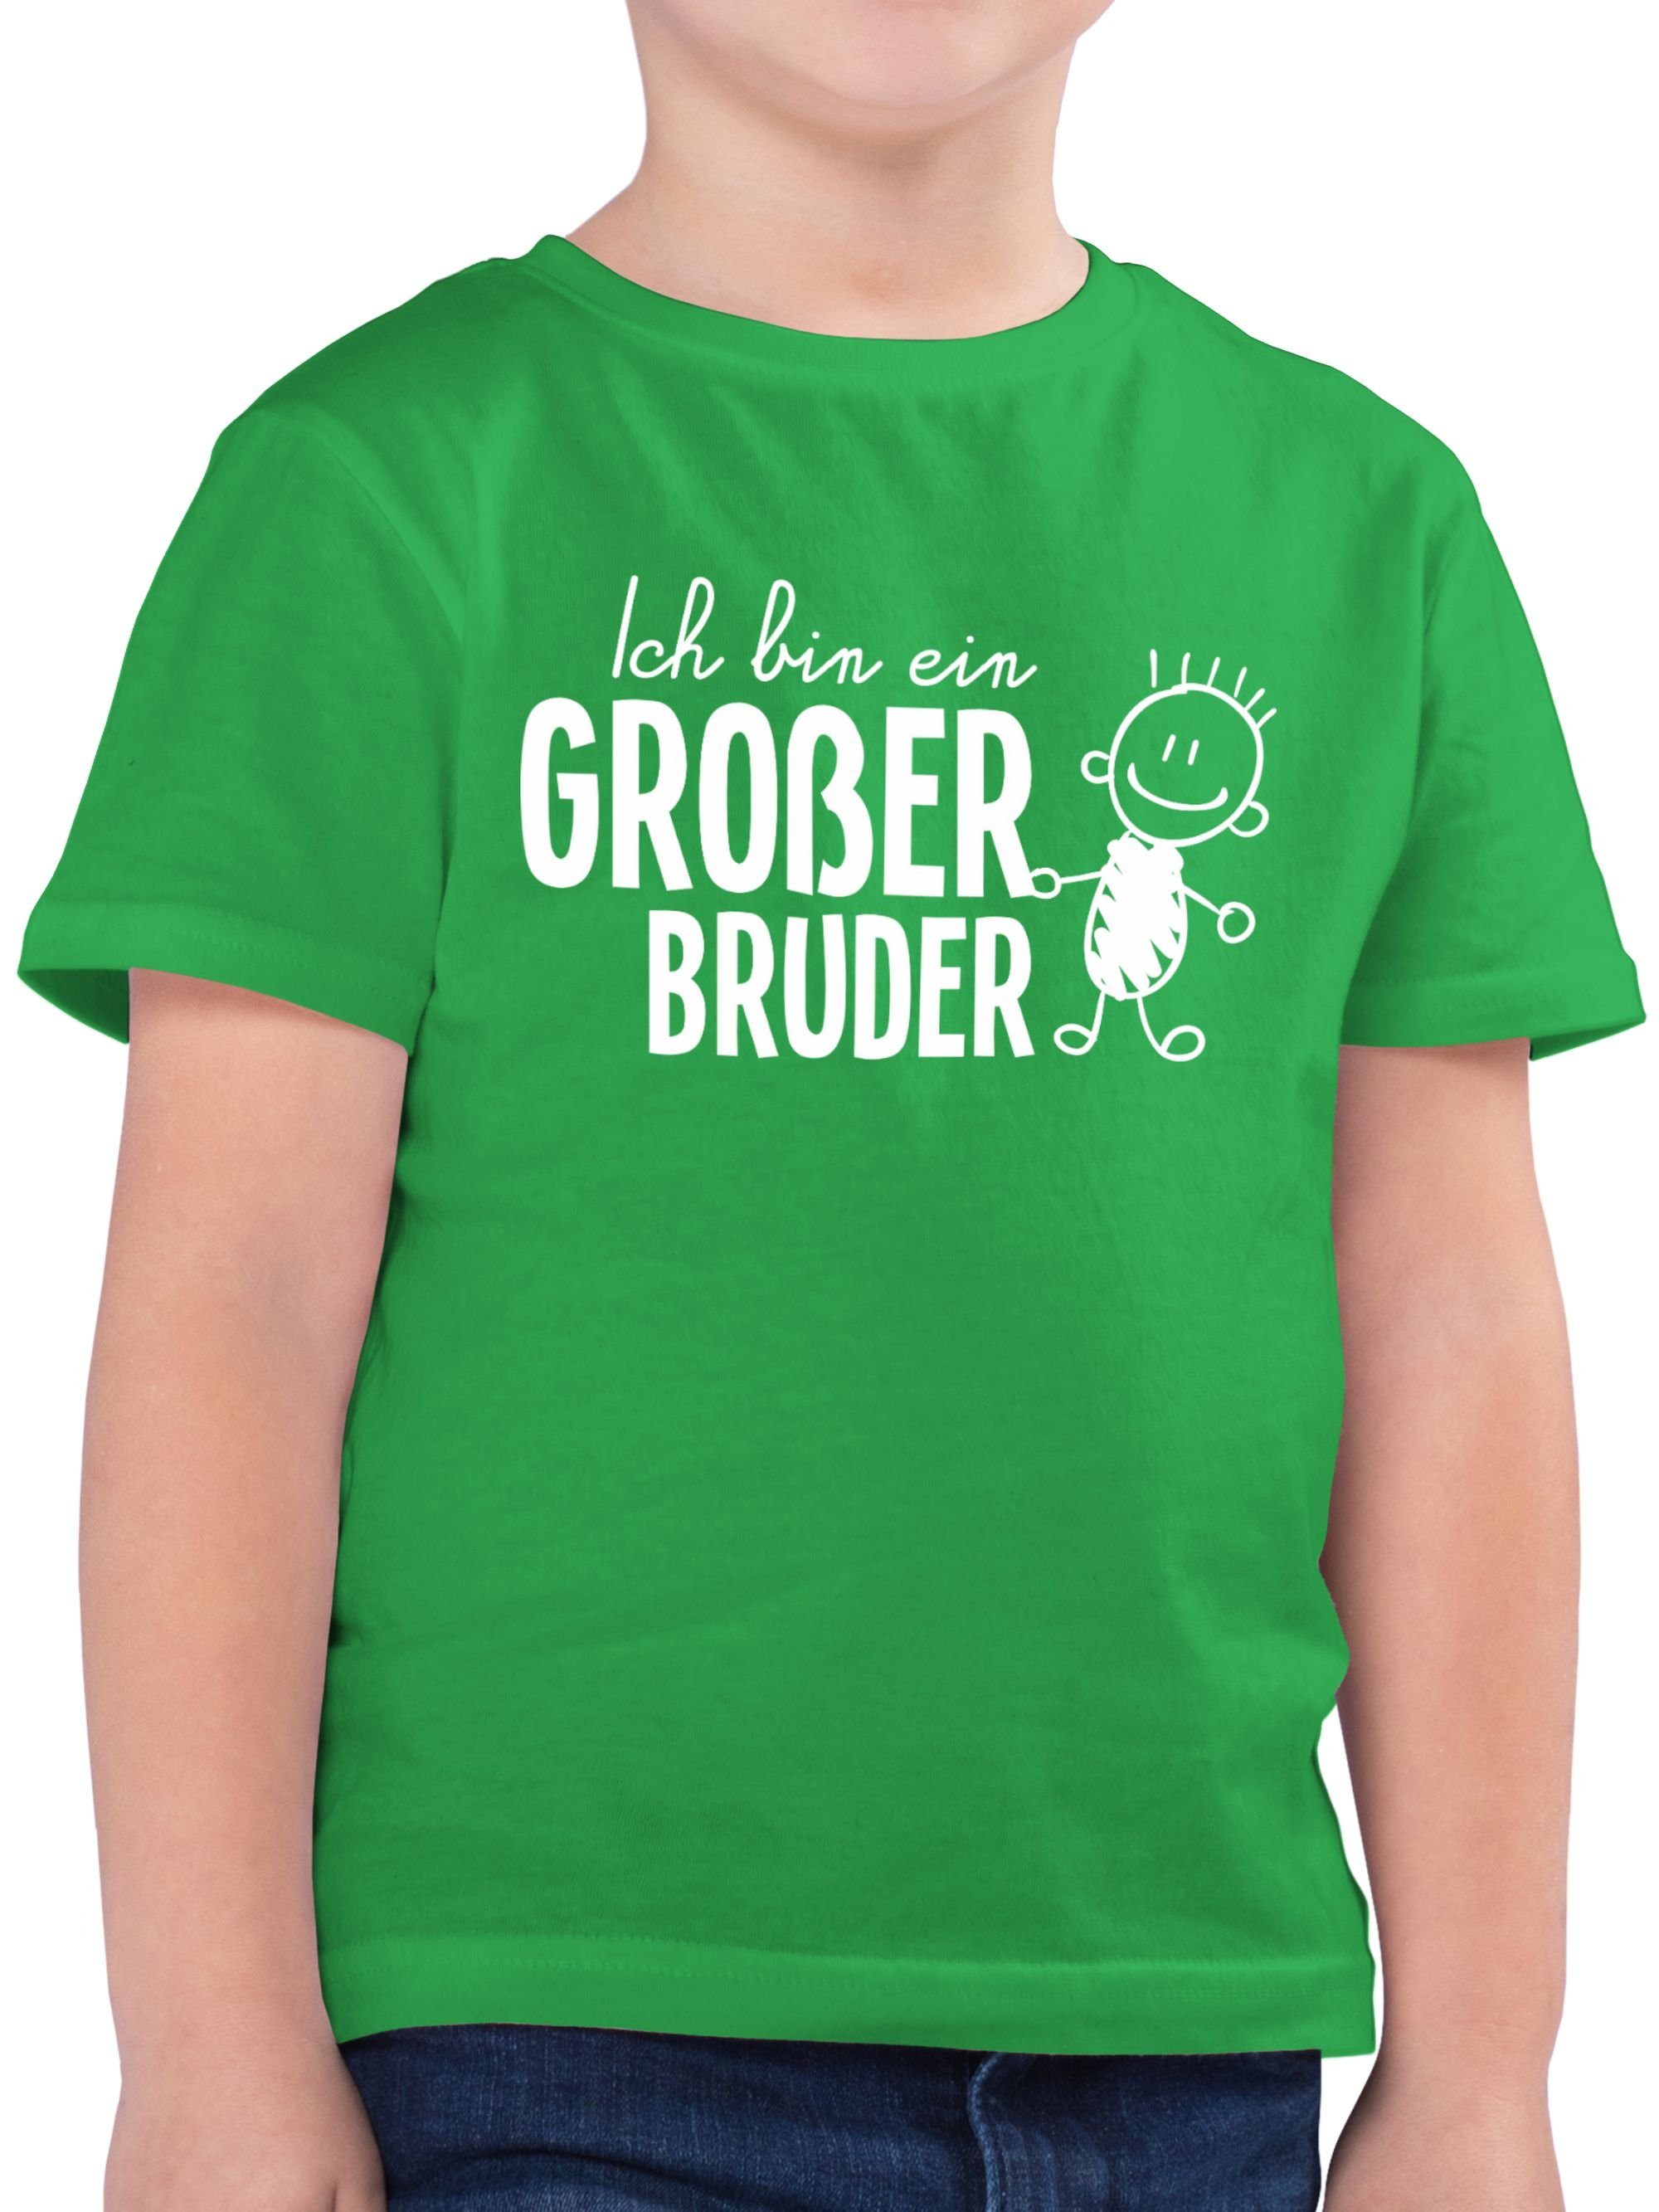 Großer 3 Bruder großer Ich Bruder Shirtracer bin Strichmännchen ein Grün T-Shirt